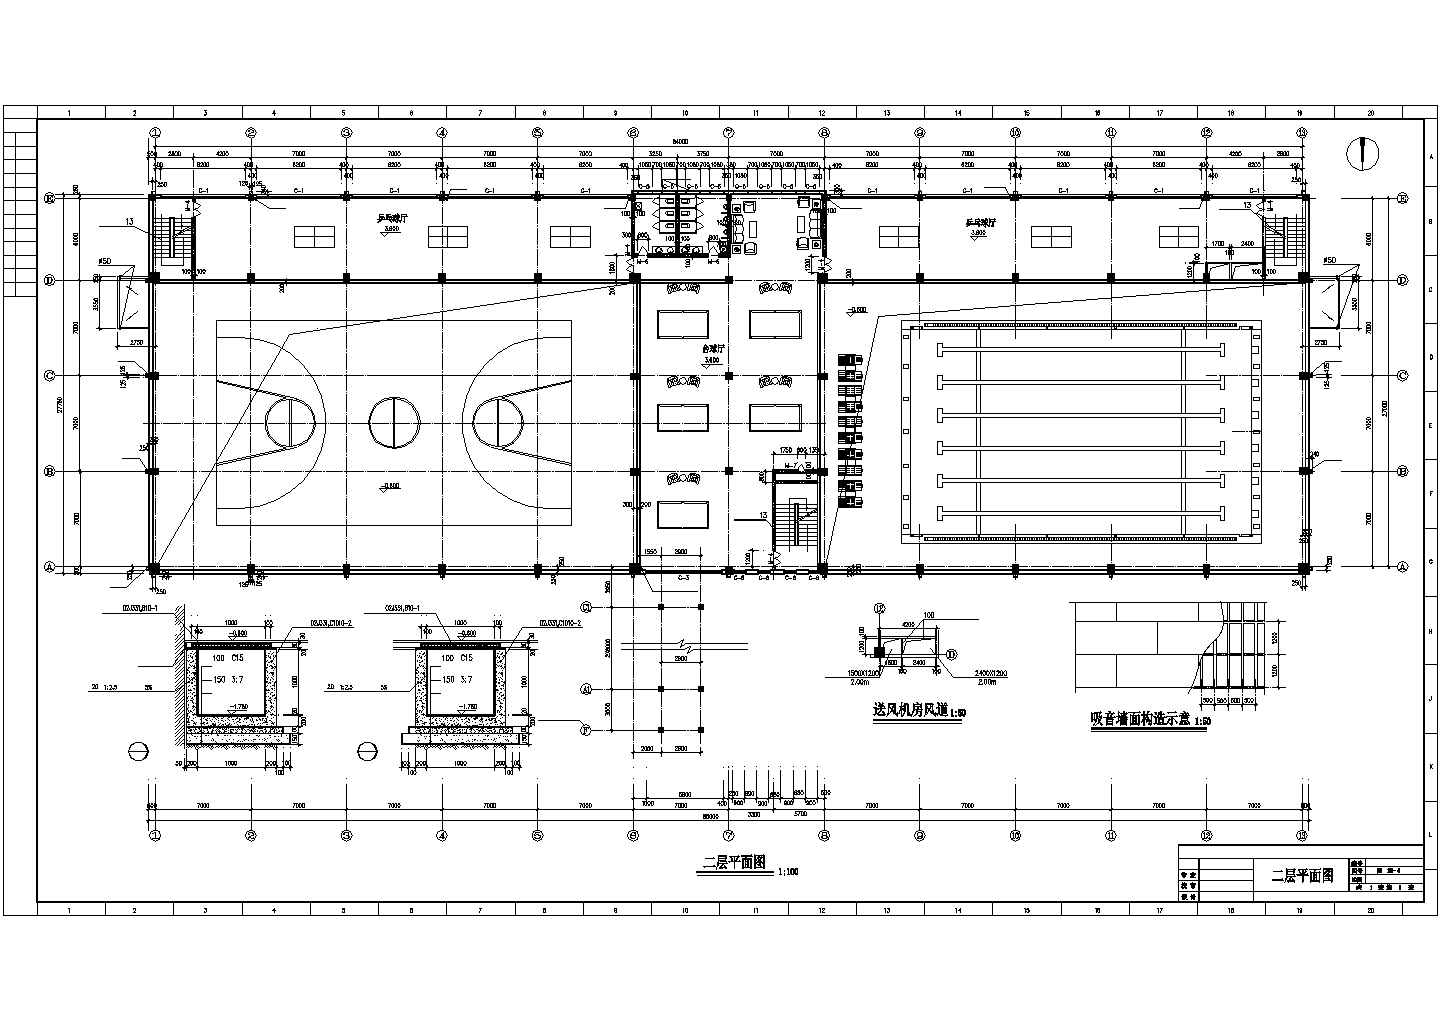 长85米 宽27.75米 3层4240.25平米框架结构体育馆建筑施工图【平立剖 楼梯 节点详图 马道平面布置图 说明】